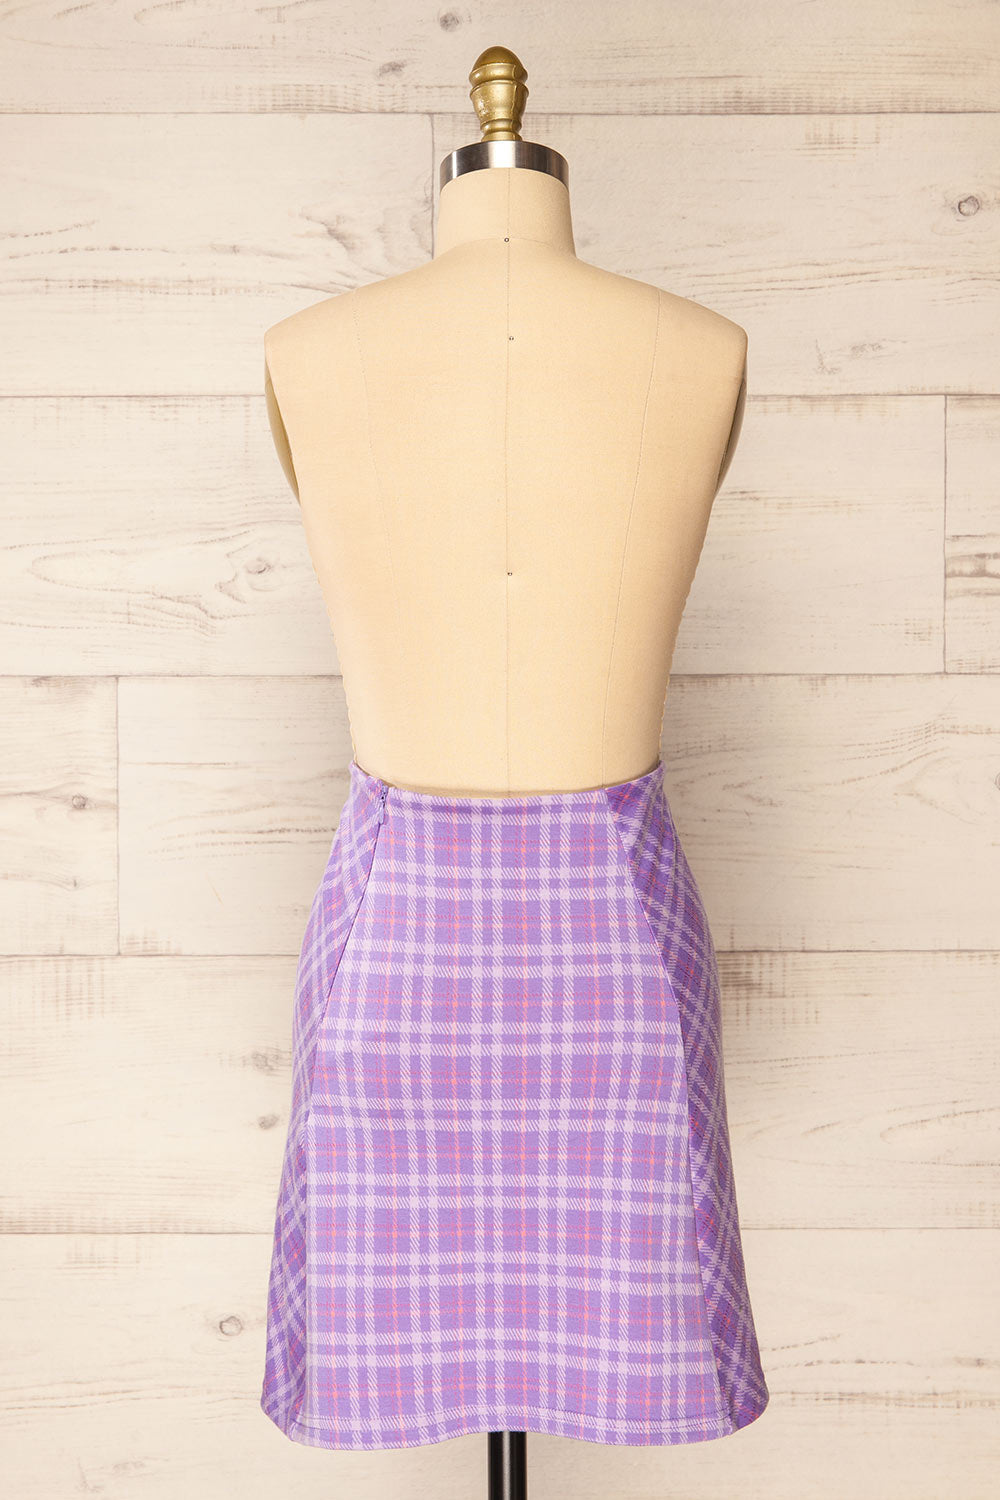 Pucisca Short A-Line Plaid Skirt | La petite garçonne back view 